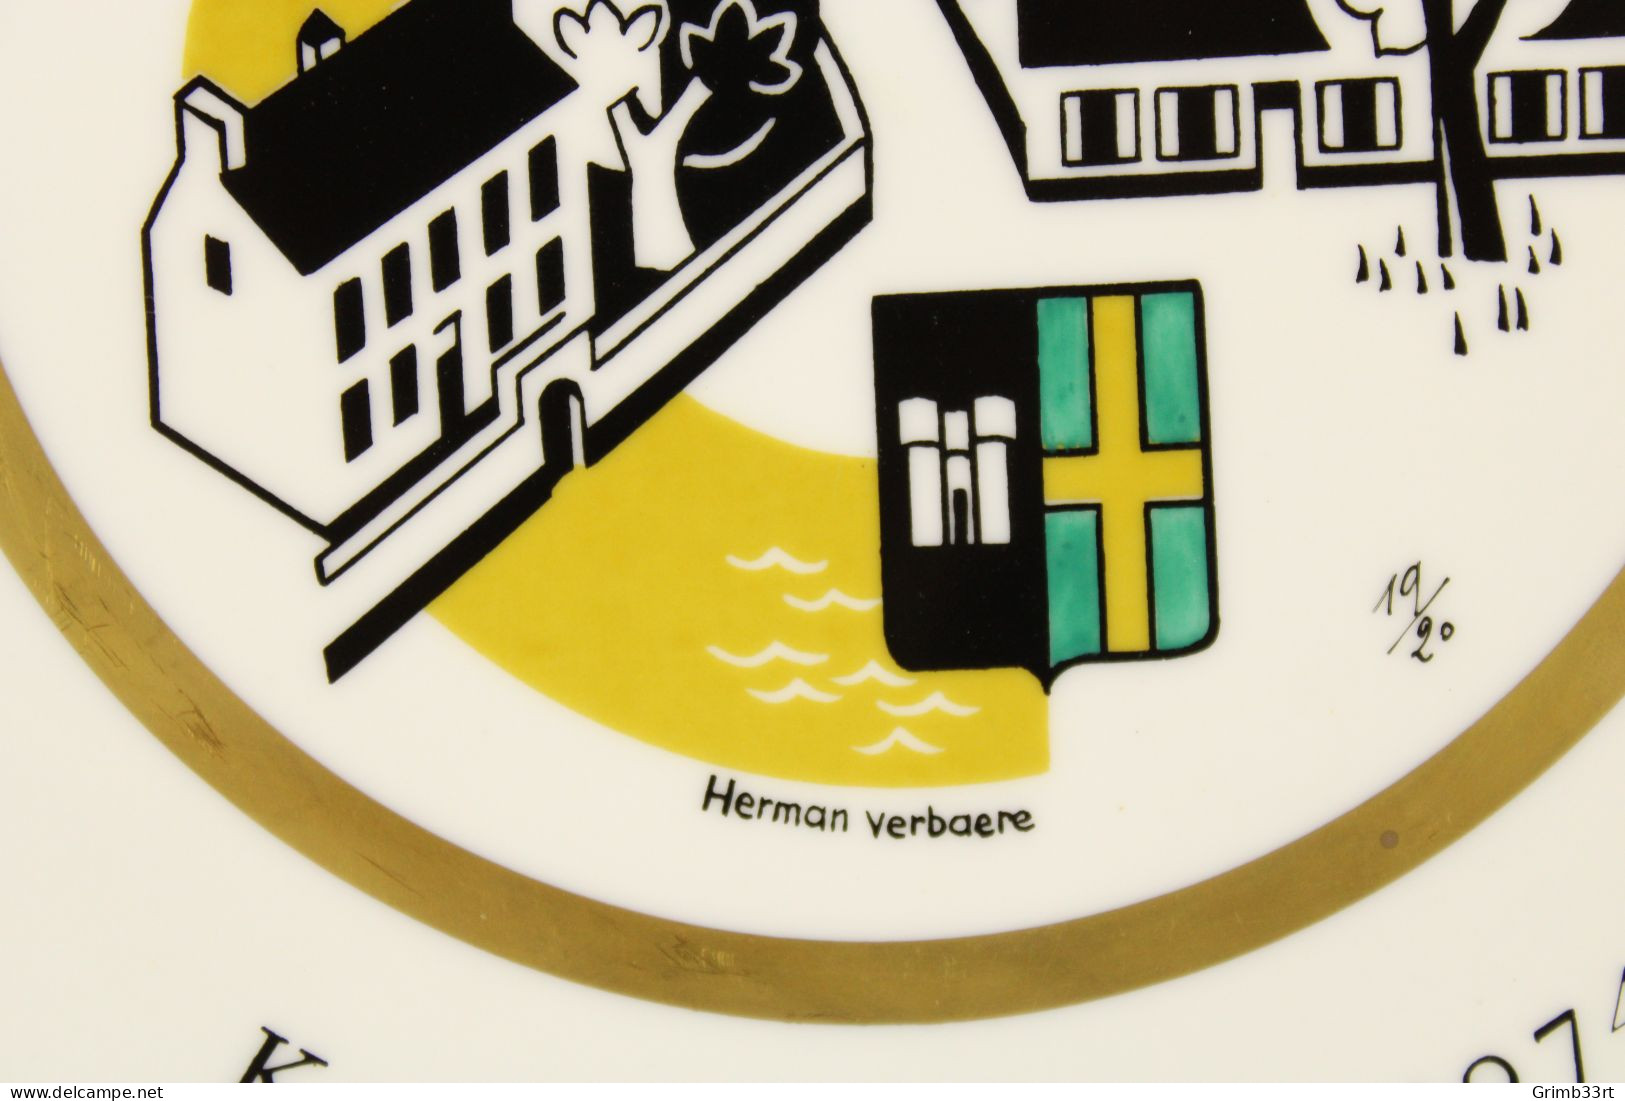 Deurle - Handbooggilde De Harlekijnen - 1974 - Herman Verbaere 19/20 - Sierbord Schuttersgilde - Boogschieten - 25.1 Cm - Archery